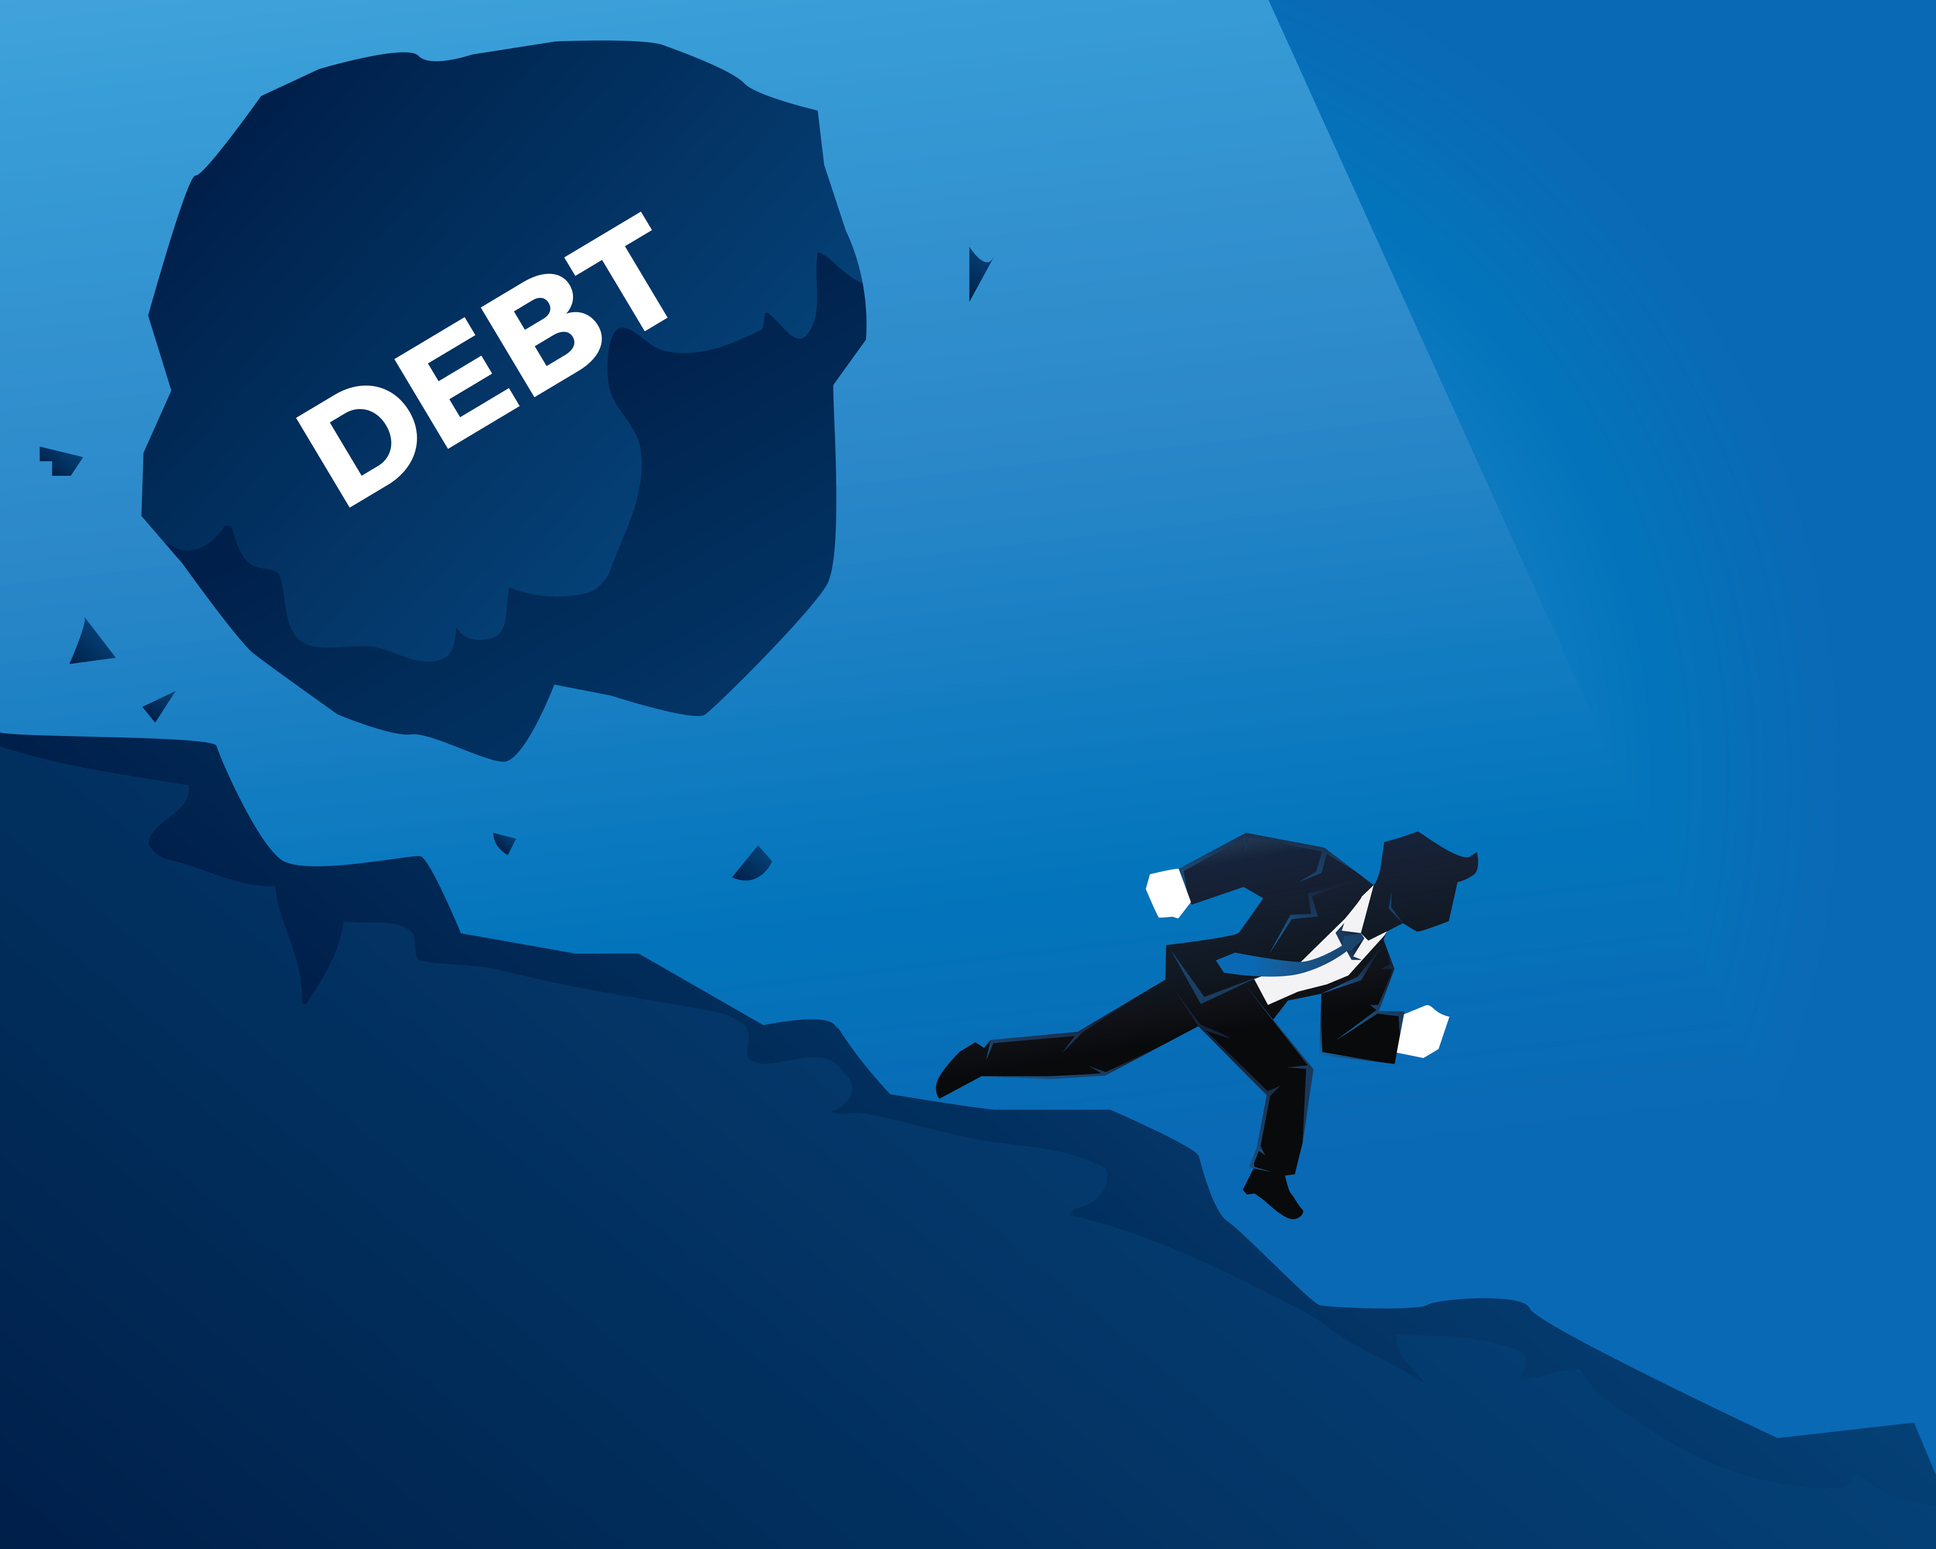 Debt at Credittriangle